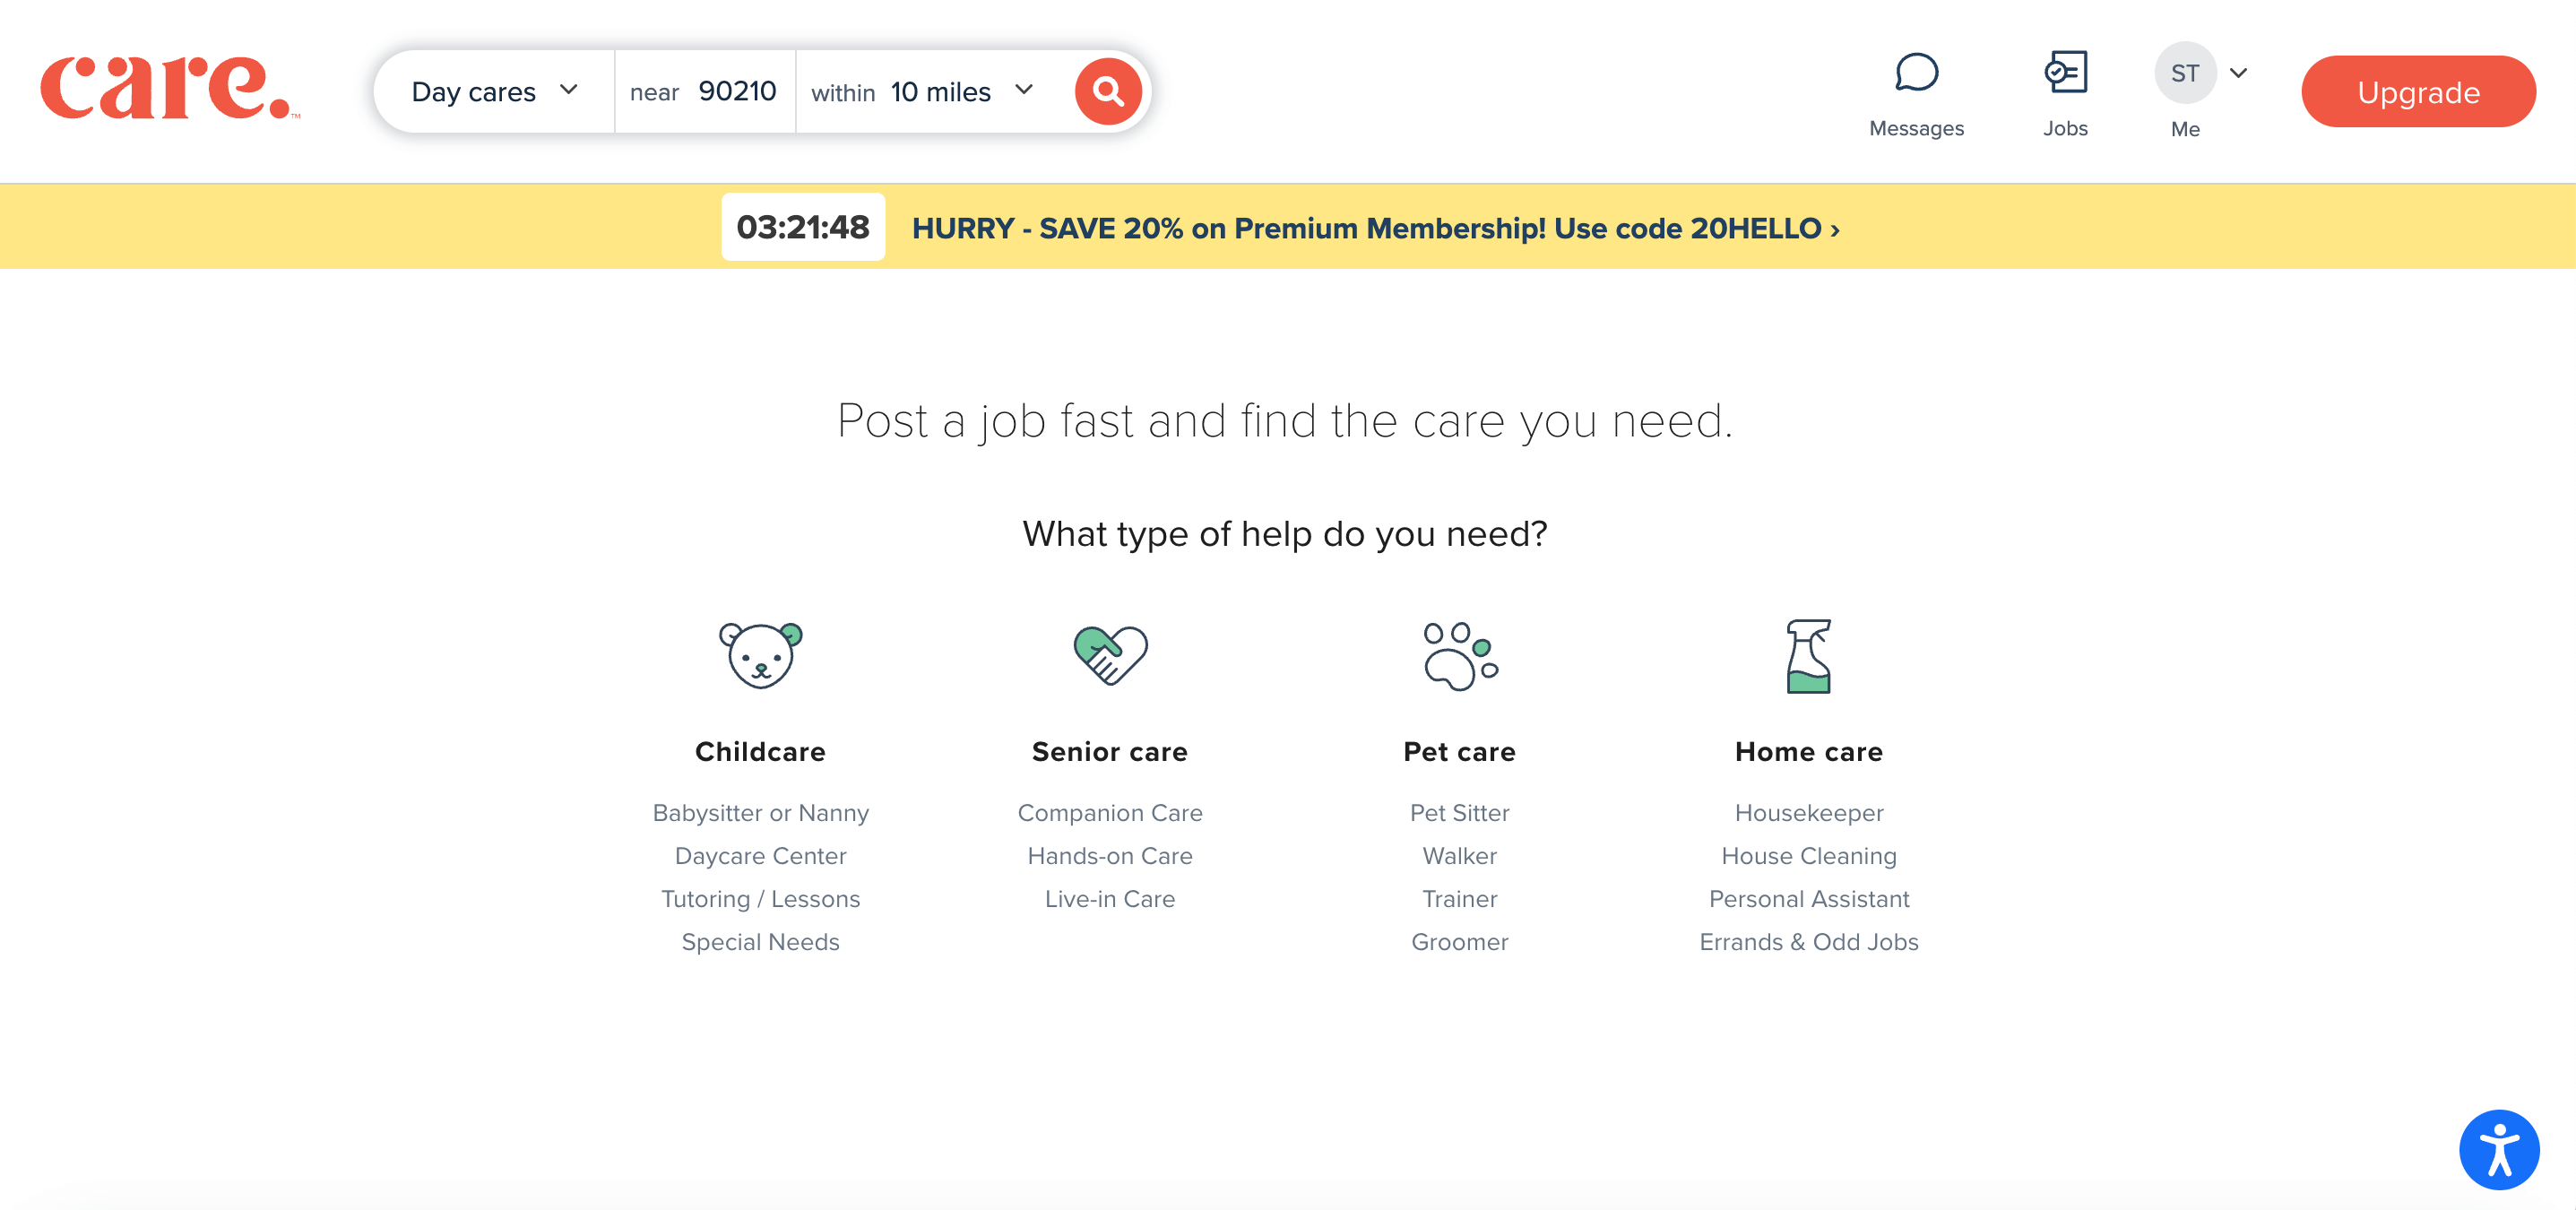 Screenshot of Care.com job post process